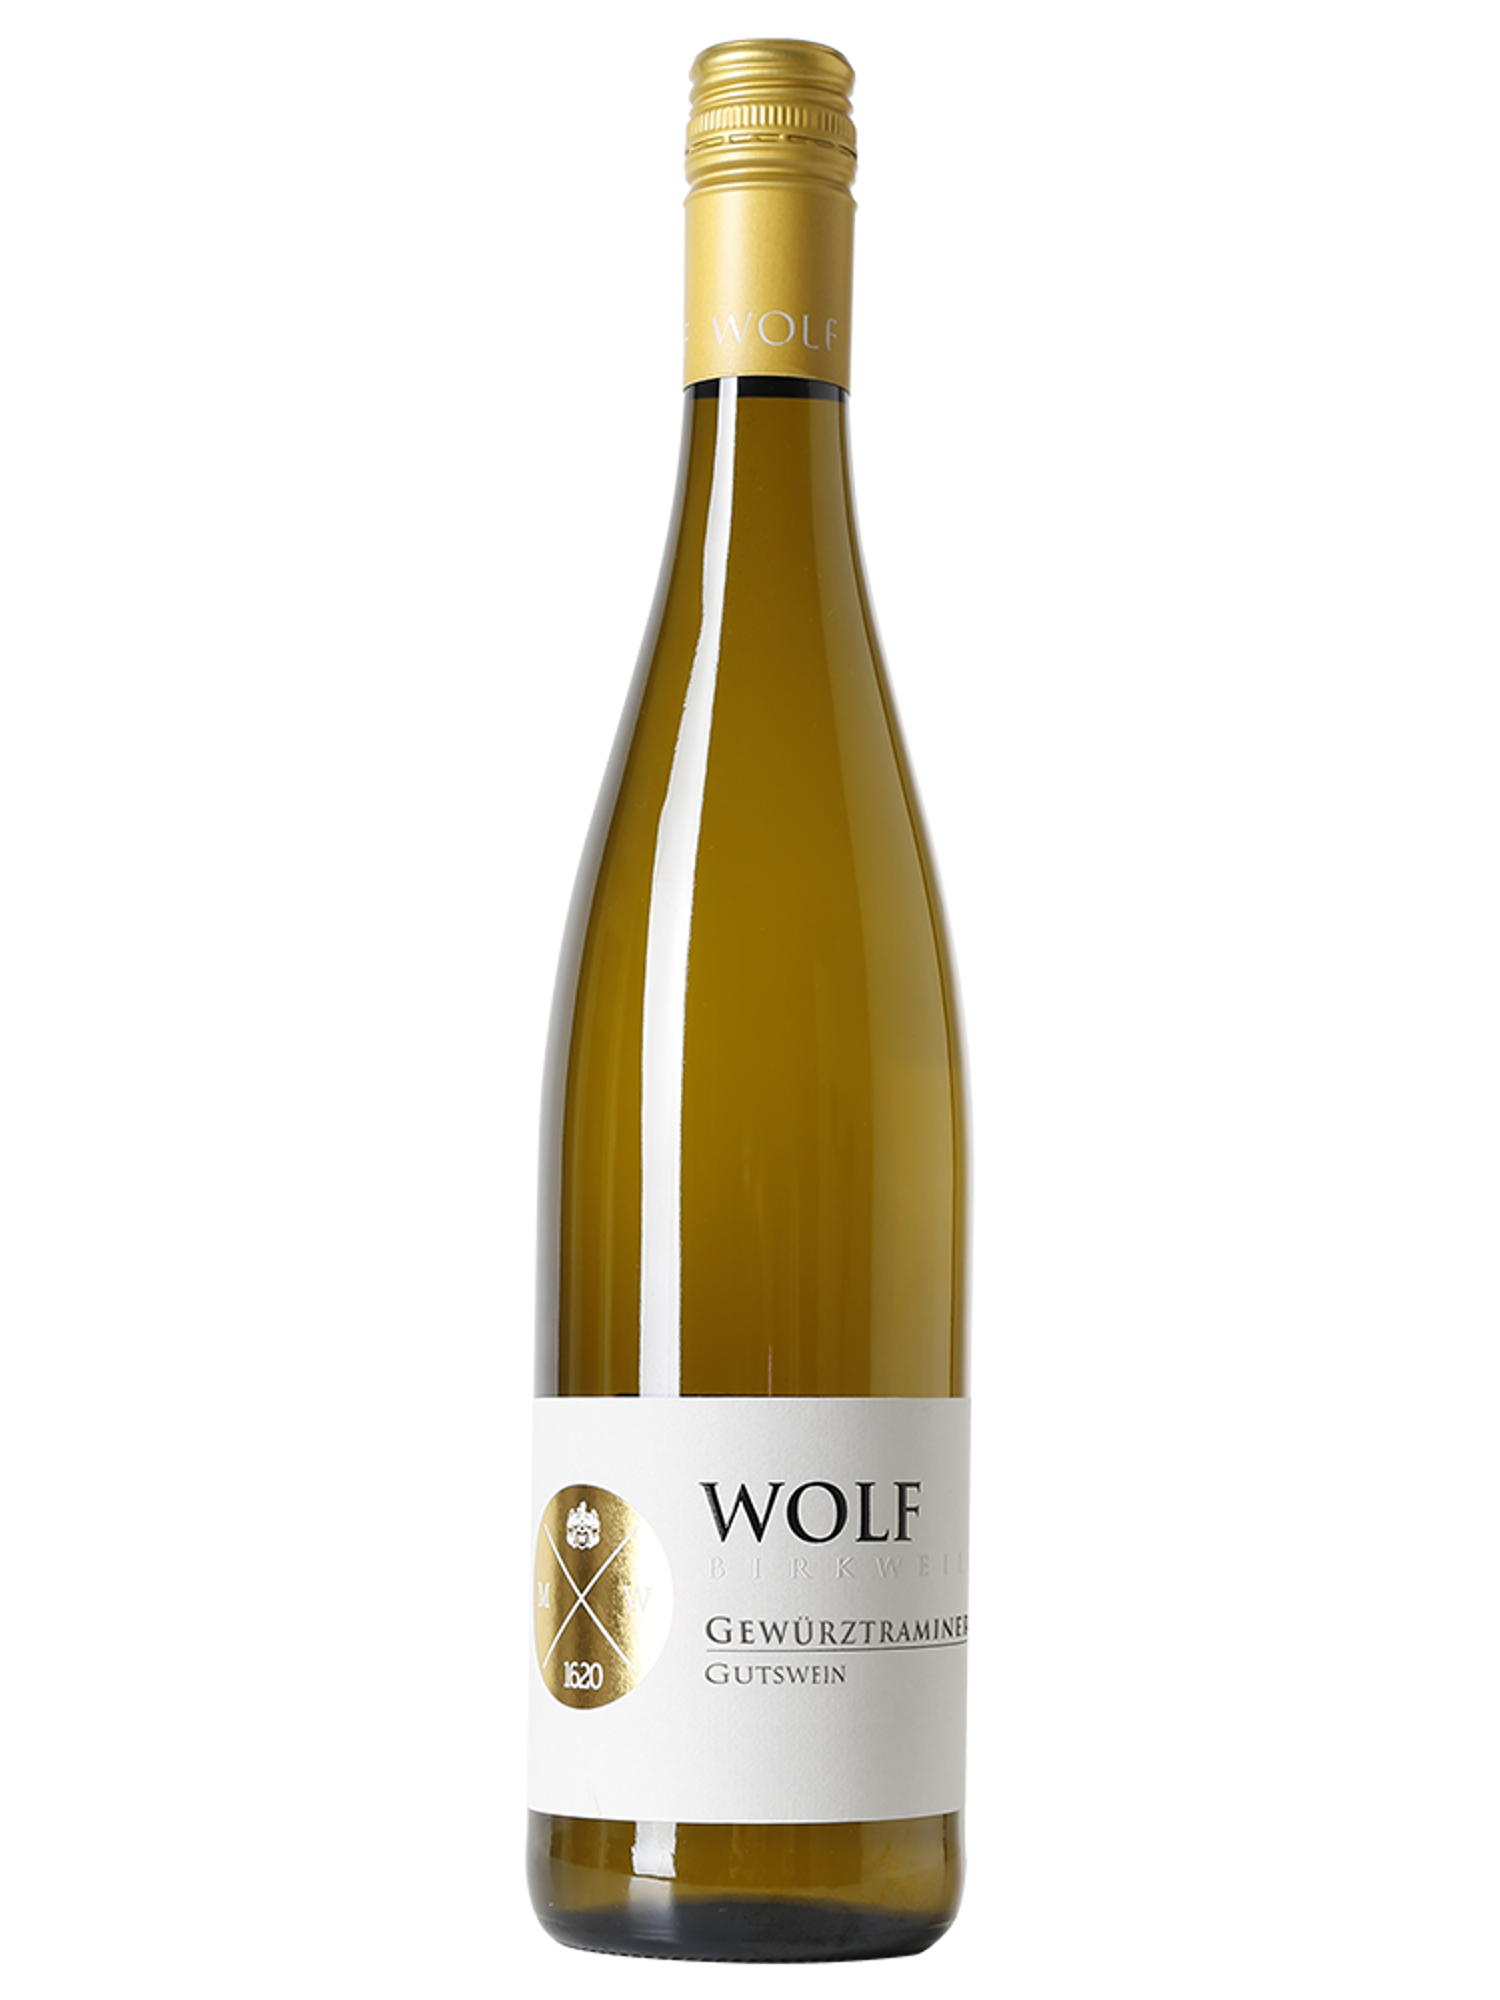 Riesling & Gewürztraminer fruchtsüß - Wolf - Gutswein